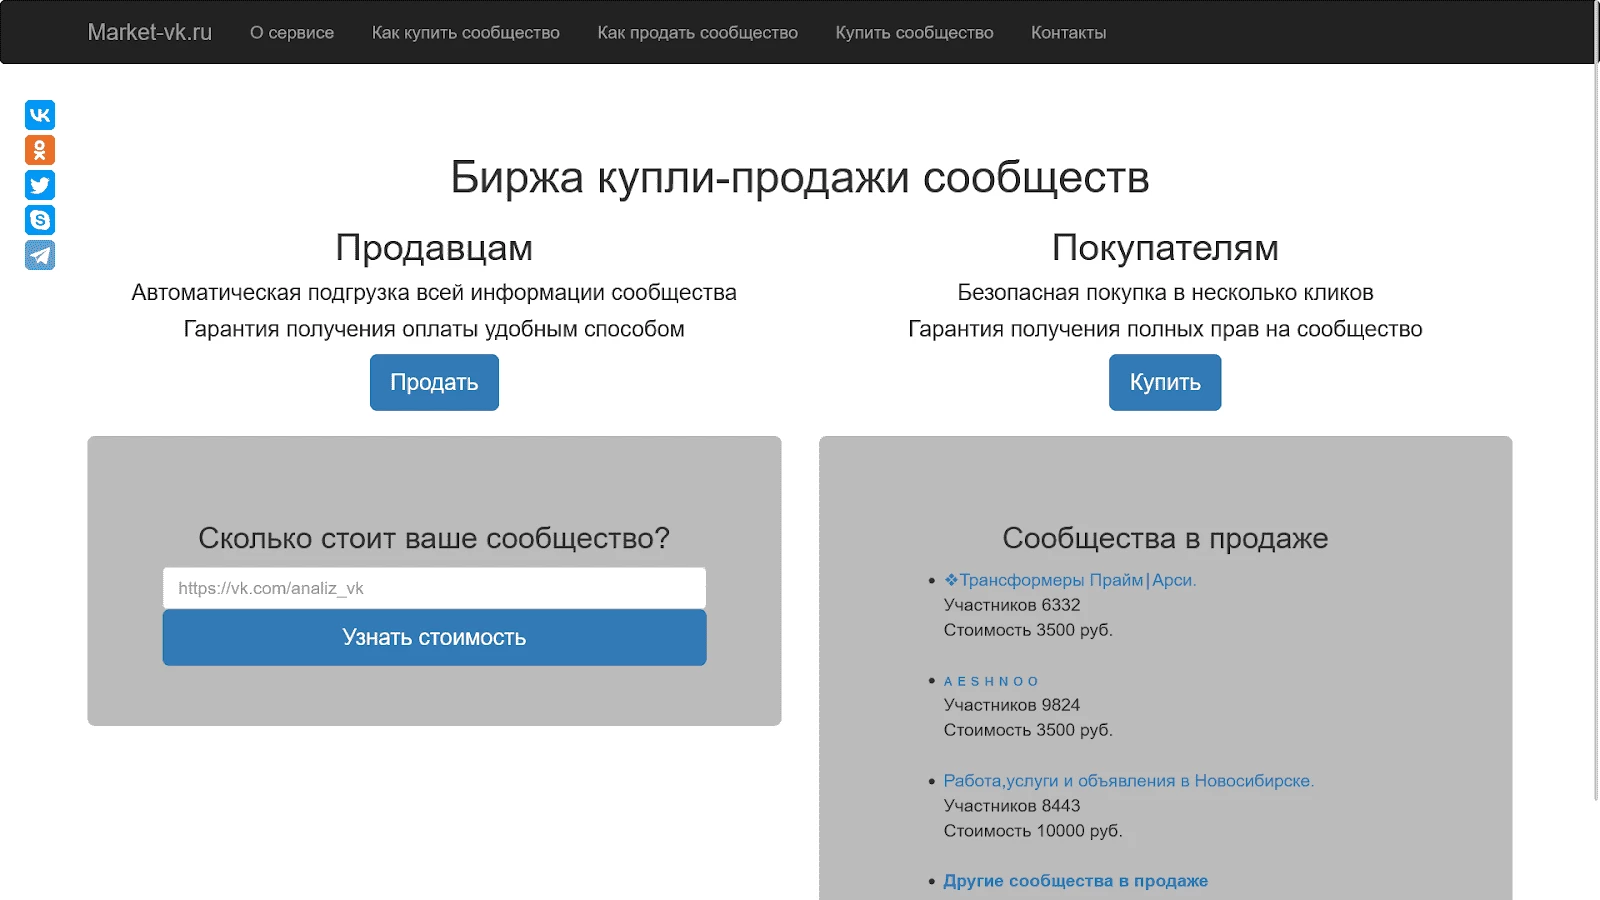 Главная страница биржи Market-VK.ru по продаже групп в ВК